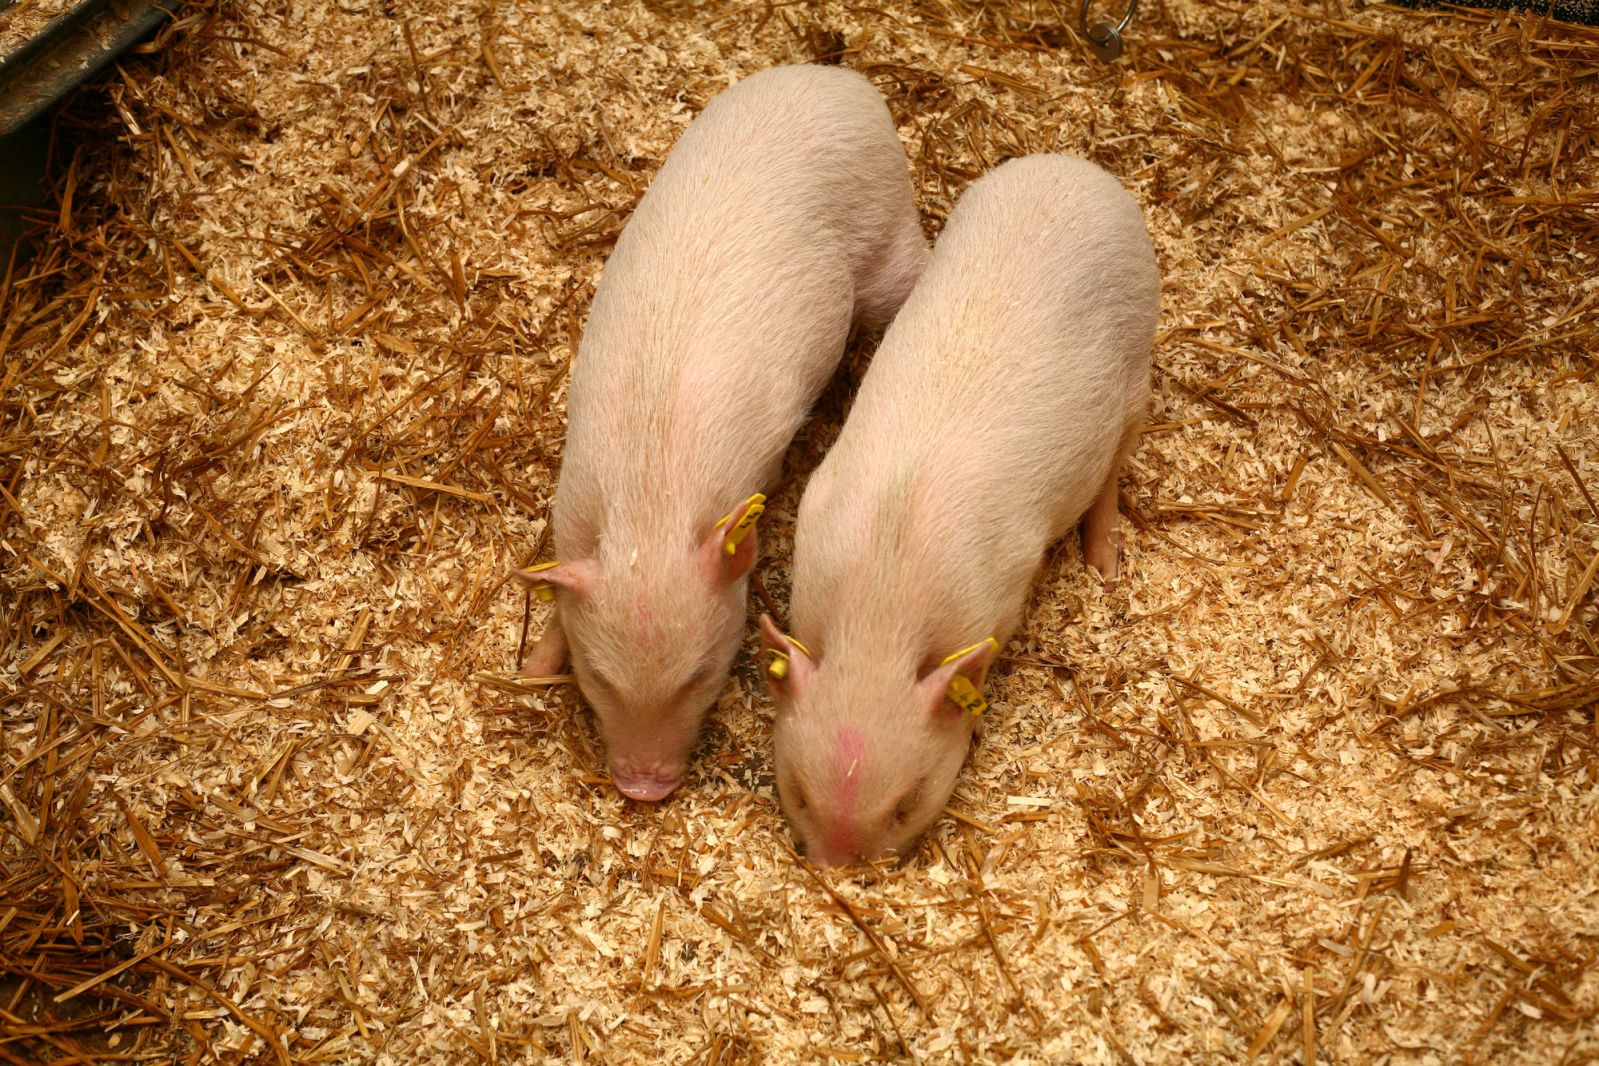 Mini-pig pair